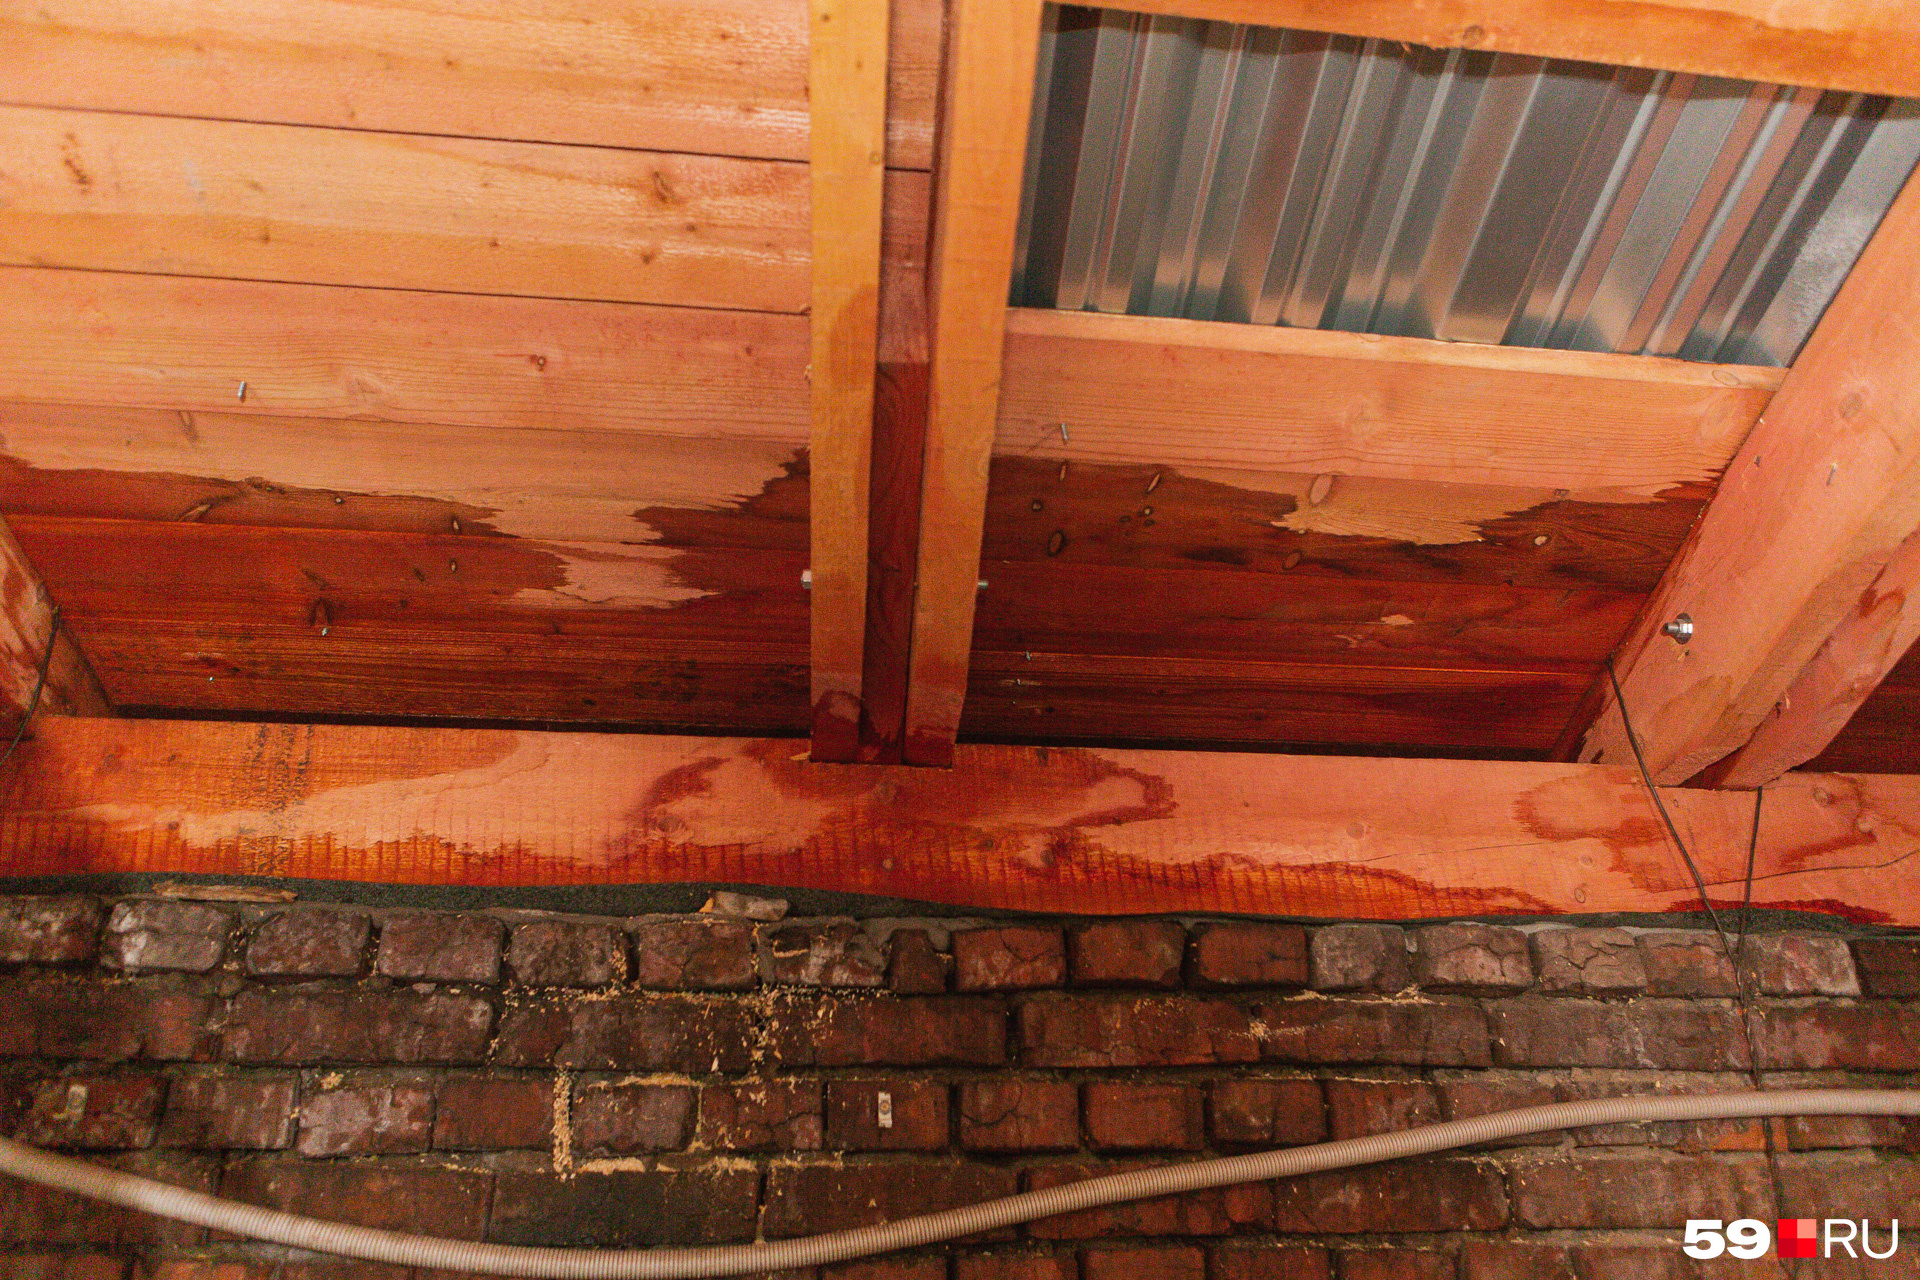 А это фото с чердака дома — здесь видно воду, просочившуюся с крыши